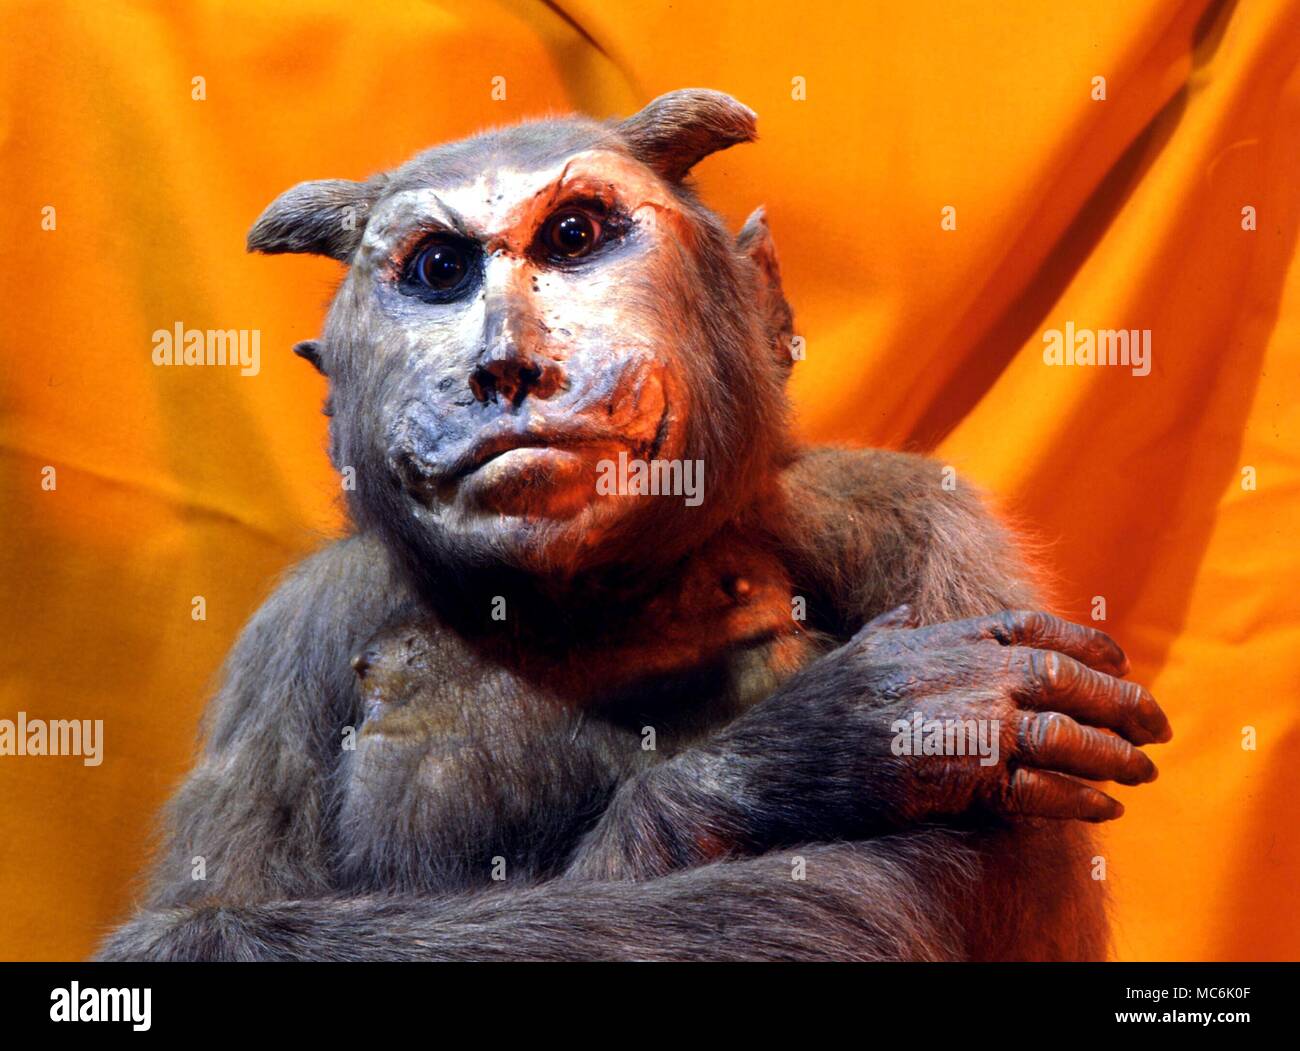 Démons - Démon fabriqué par Charles Waterton à partir d'un singe en peluche, qu'il donna des cornes. C'était une blague, une image de soi-disant Luther Banque D'Images